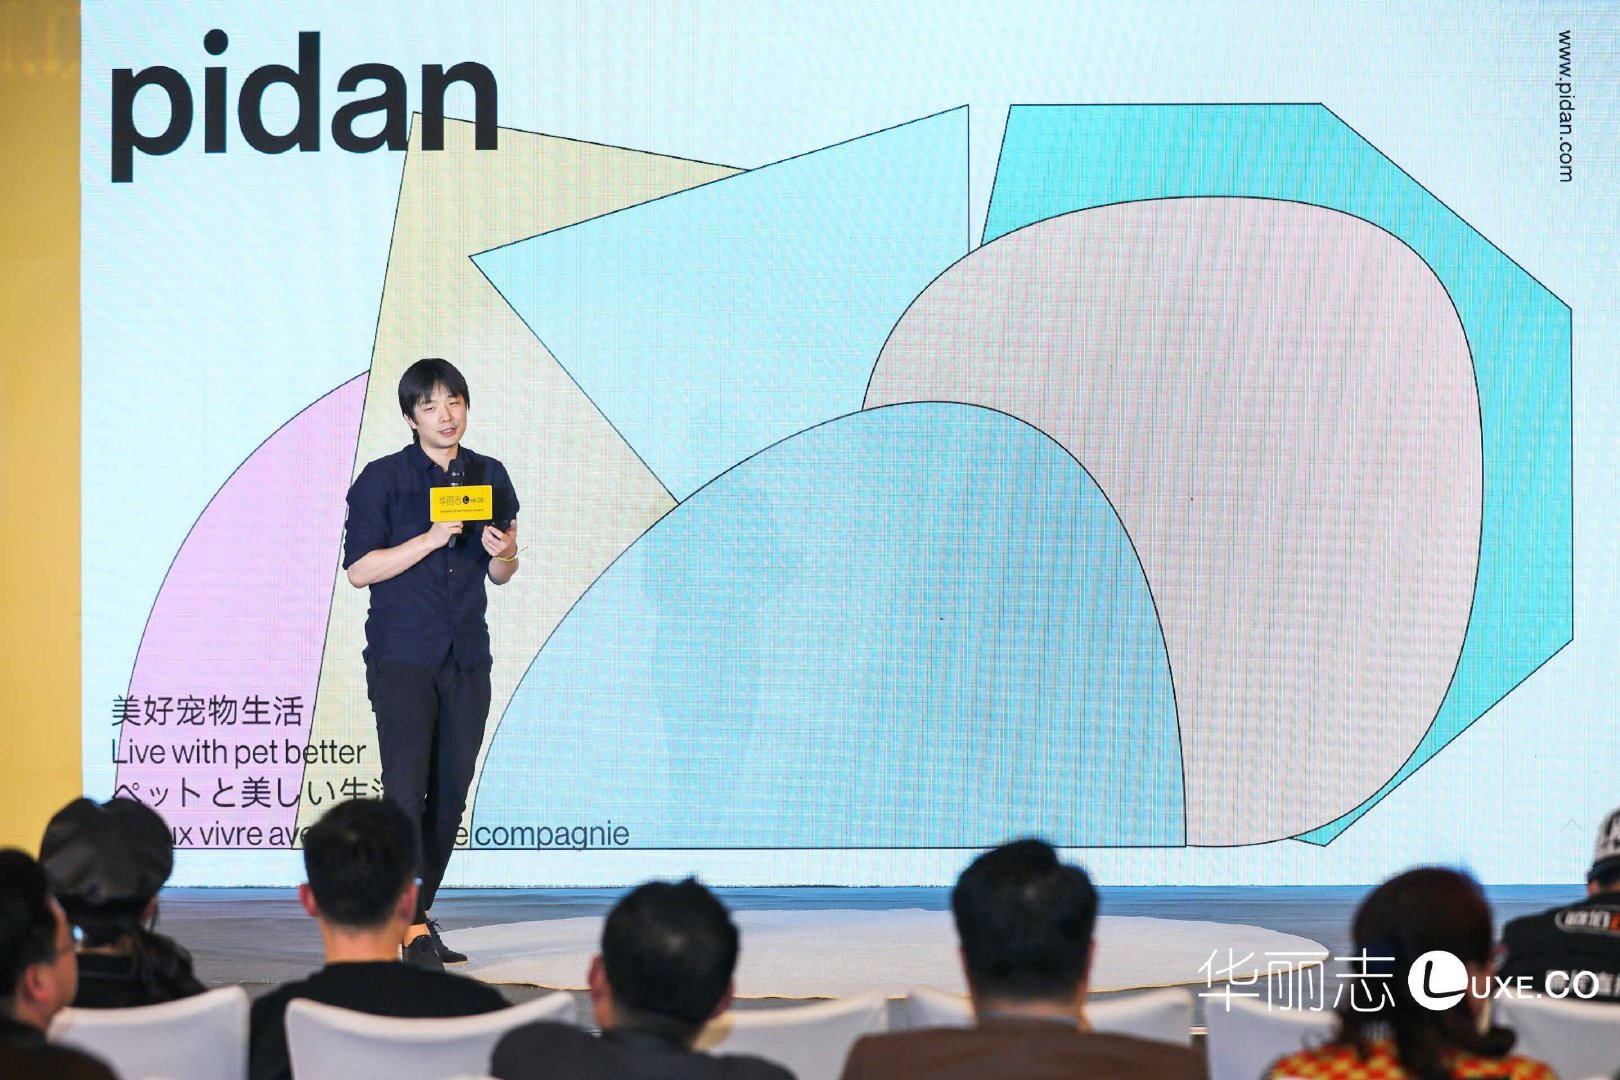 上图：pidan彼诞创始人 & CEO 马文飞